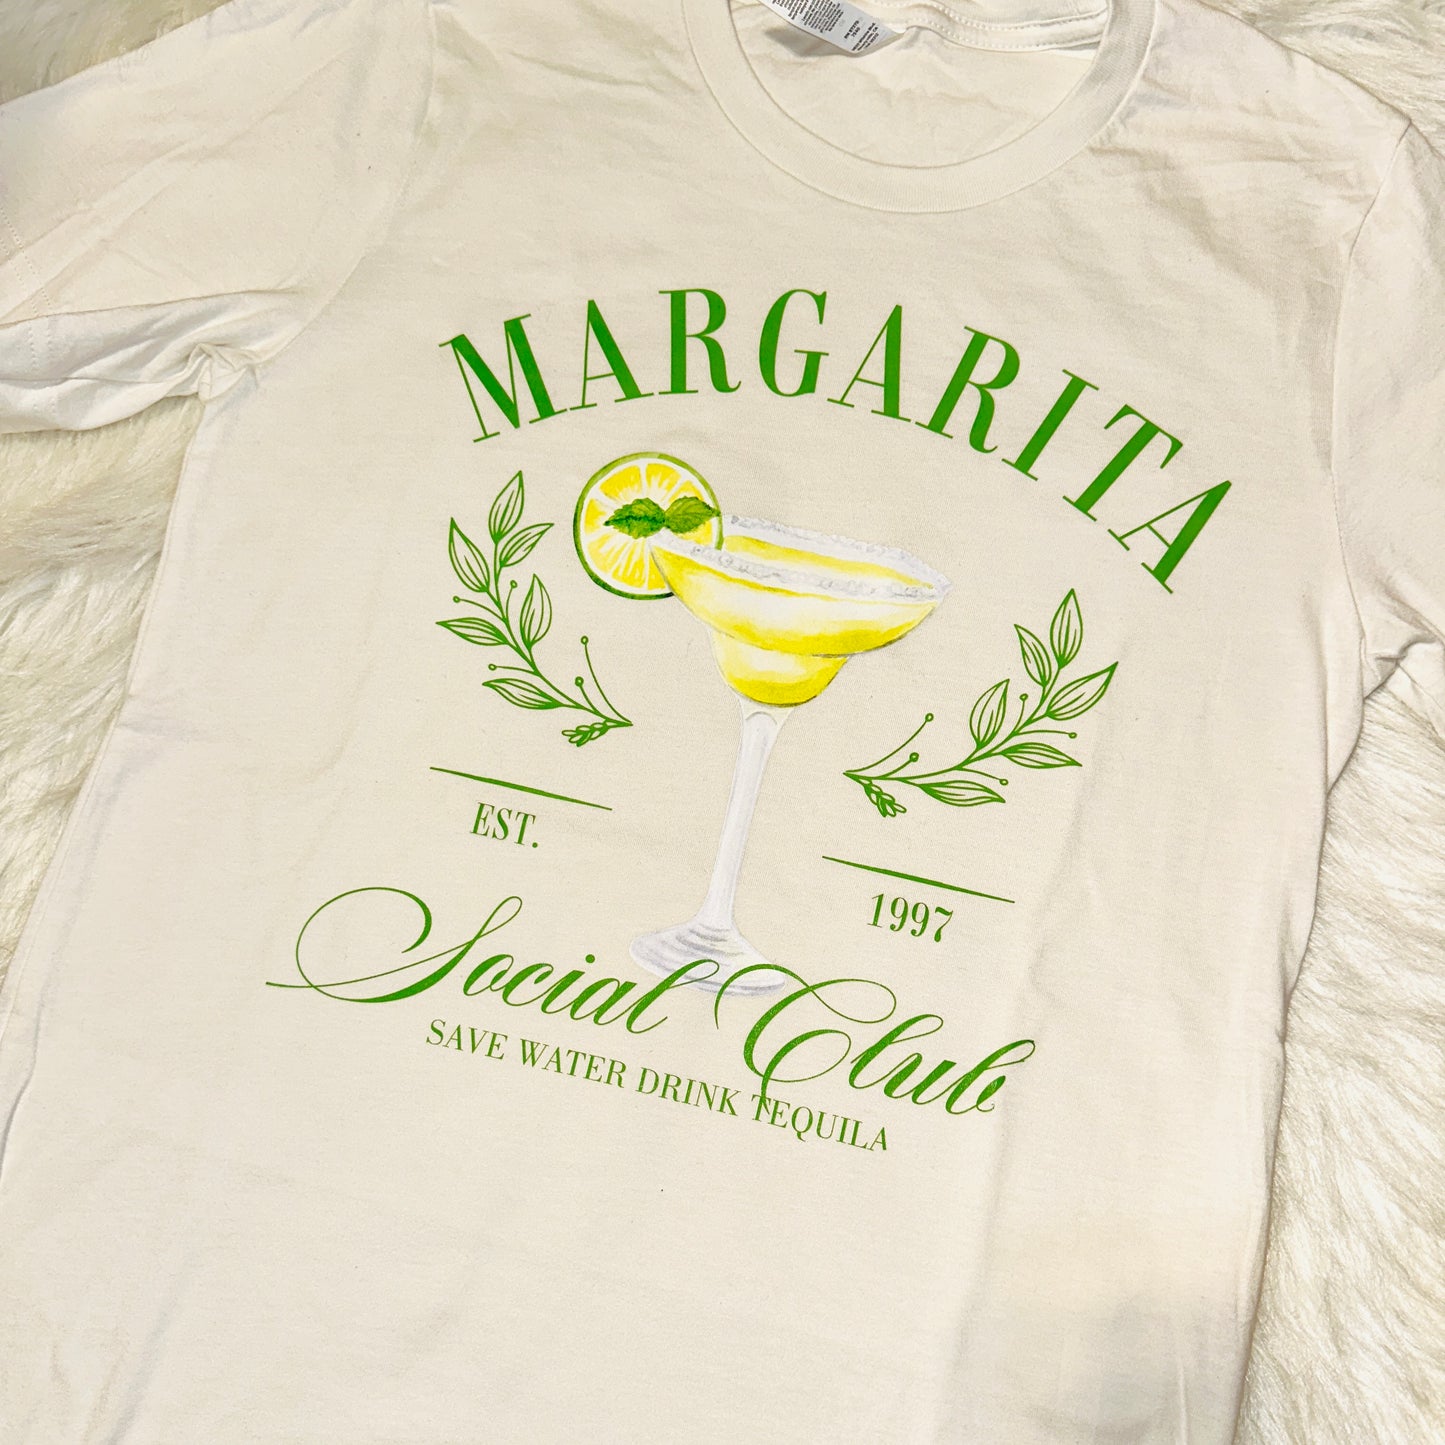 Margarita Social Club Vintage Tee